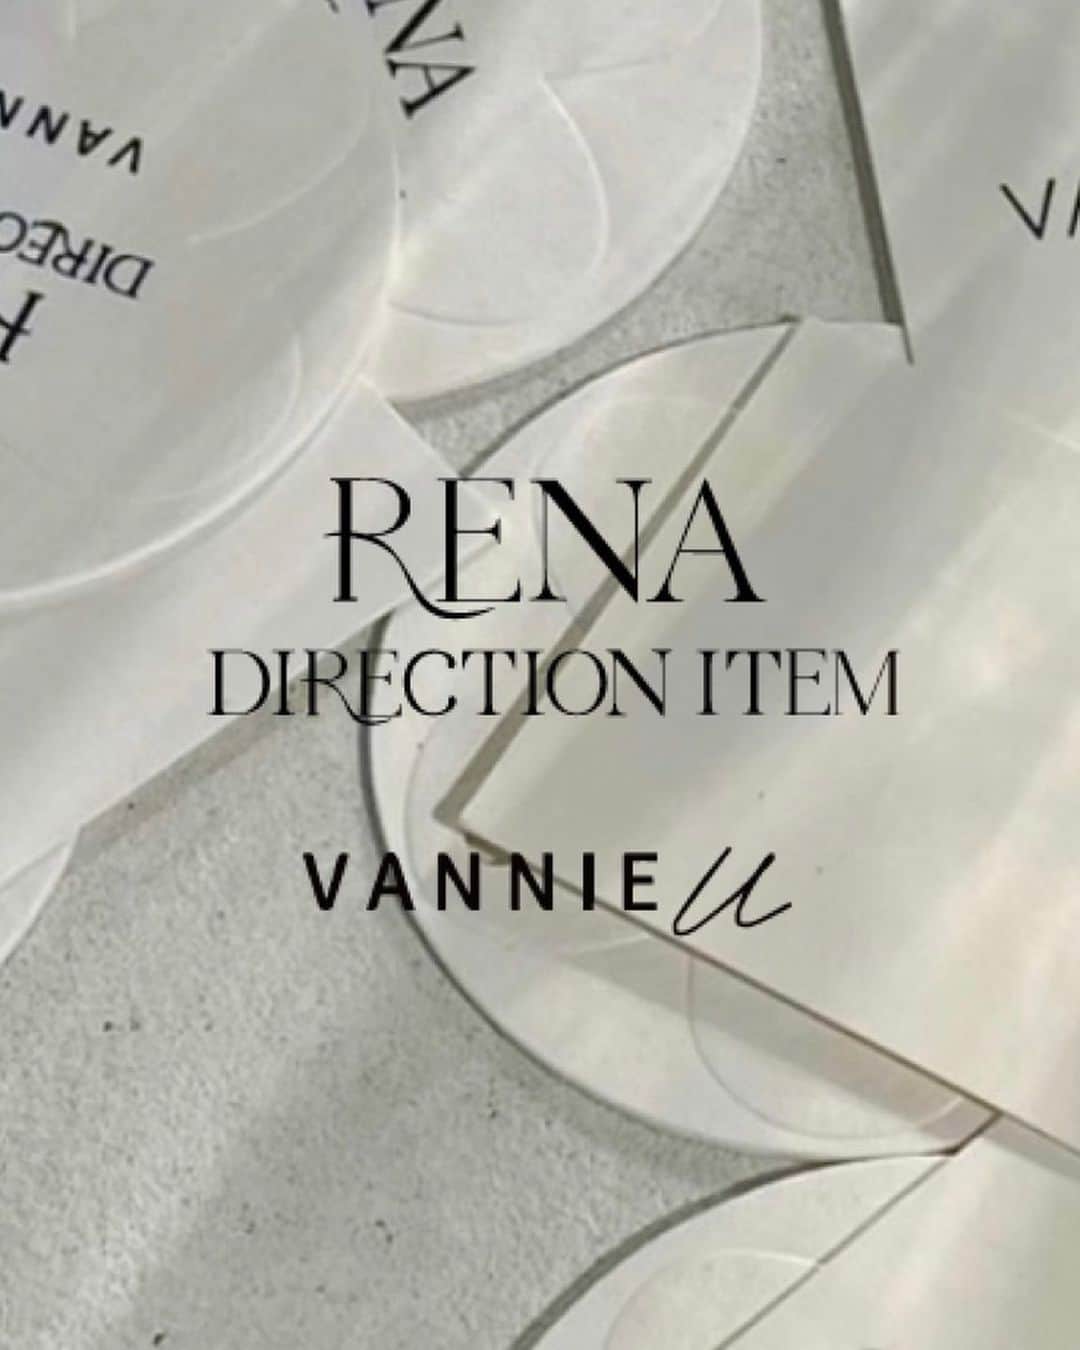 Vannie Officialのインスタグラム：「【RENA direction / VANNIE U】 ⁡ VANNIE U PRESSの @rena_yoshitsugu が企画したアイテムが4型(トップス、カーディガン、ワンピース、スカート)発売致します！ ⁡ トレンド感を抑えつつ、フェミニンで女性らしく、生地やデザインにもこだわった特別な4型となっております。 ⁡ 詳細につきましては @rena_yoshitsugu VANNIE U公式Instagramにてお知らせいたしますのでお楽しみに♡  【先行販売】 VANNIE U POPUP新宿ルミネエスト 10/7(sat.)〜10/9(mon.) 土日祝:10:30〜21:00 ⁡(4型全て発売いたします)  【ZOZOTOWN】 第1弾 10/21(sat.) 19:00 発売開始 ワンショルダーラメスウェット  gray / pink free size ¥5,390 tax in  フロントジップフレアスカート black / gray free size ¥6,930 tax in  第2弾 11/18(sat.) 19:00 発売開始 フラワービジューカーディガン yellow / light gray free size ¥6,930 tax in  フロントオープンマーメイドワンピース beige /  gray free size ¥8,800 tax in  #vannie_u #ヴァニーユー #zozotown #ゾゾタウン #カーディガン #ワンピース #スカート #フェミニン #秋コーデ #秋服 #秋服コーデ #秋冬コーデ #オフショル #秋服コーディネート #カーディガンコーデ #ニット #フレアスカート #156cmコーデ #20代コーデ #大人カジュアル #スウェットコーデ #スウェット #着回し #着回しコーデ #ootd #1週間コーデ #コーデ #イエベ春 #花柄コーデ #ビジュー」